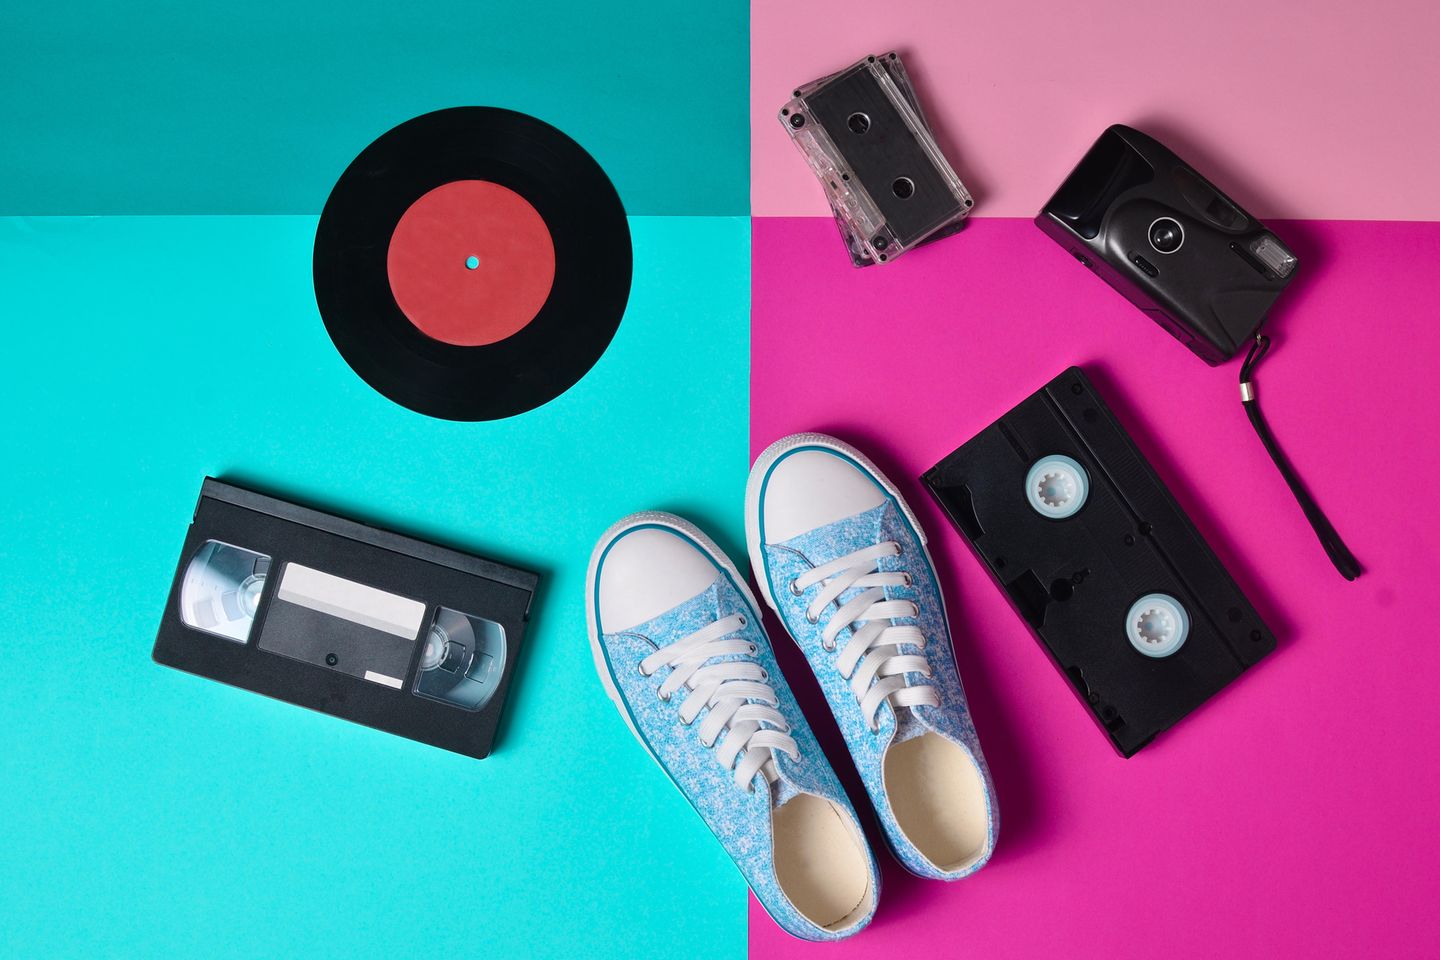 Plateau-Schuhe sind wieder im Trend: Gegenstände aus den 90ern (VHS-Kassetten, Audio-Kassette, Foto-Apparat)